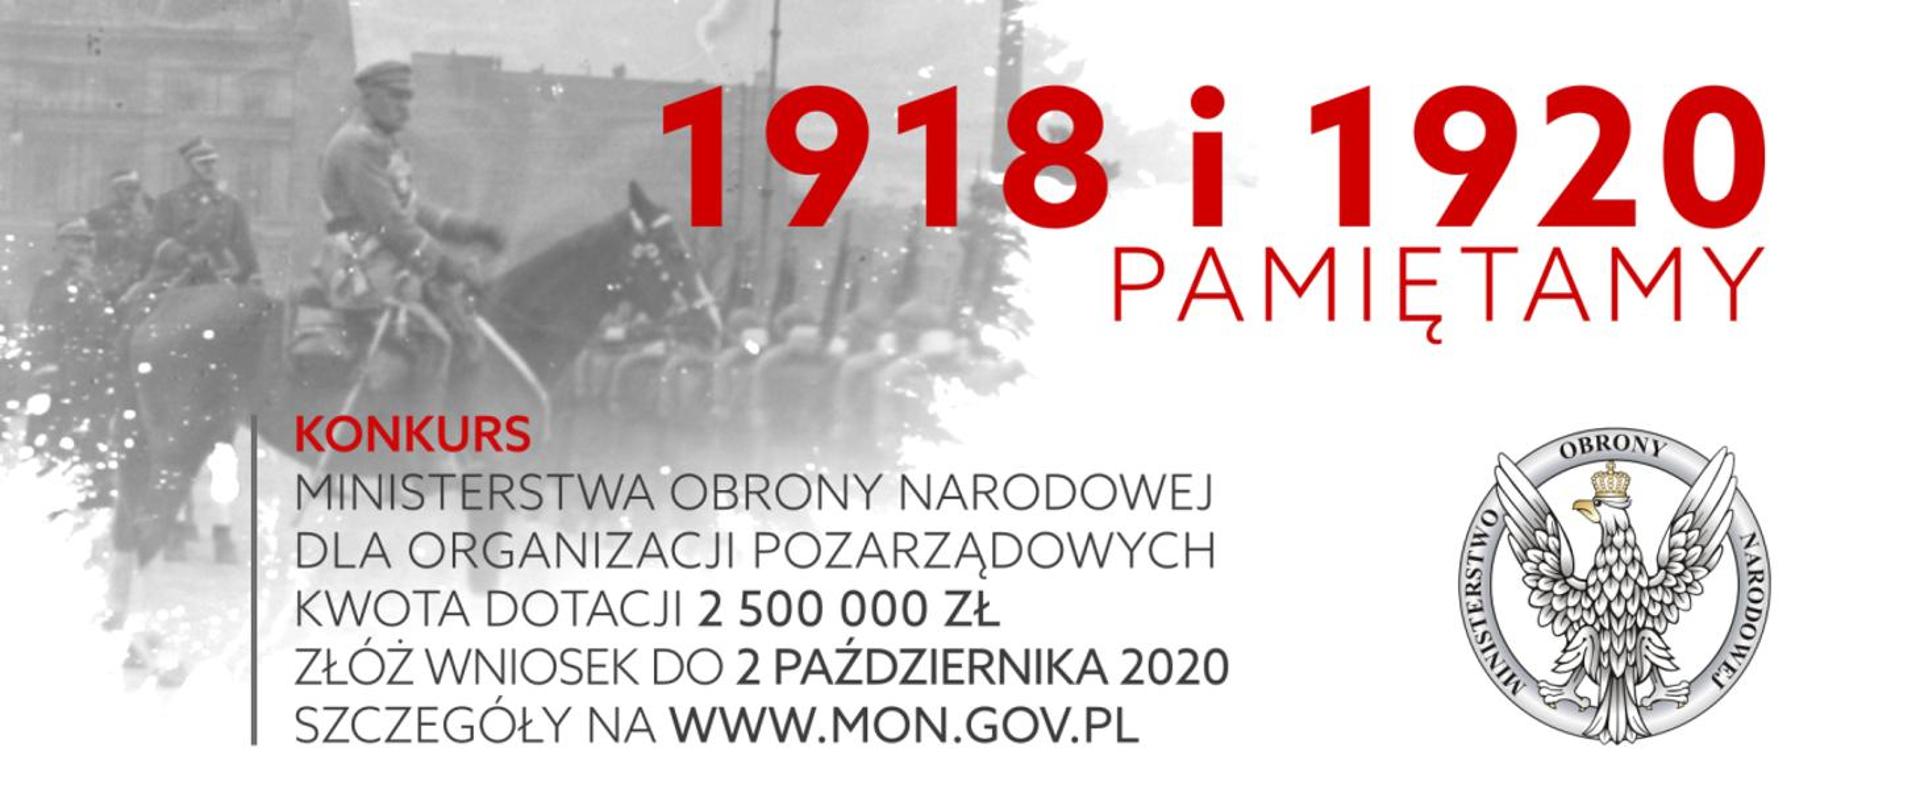 Wspólnie świętujmy odzyskanie Niepodległości i stulecie Bitwy Warszawskiej!